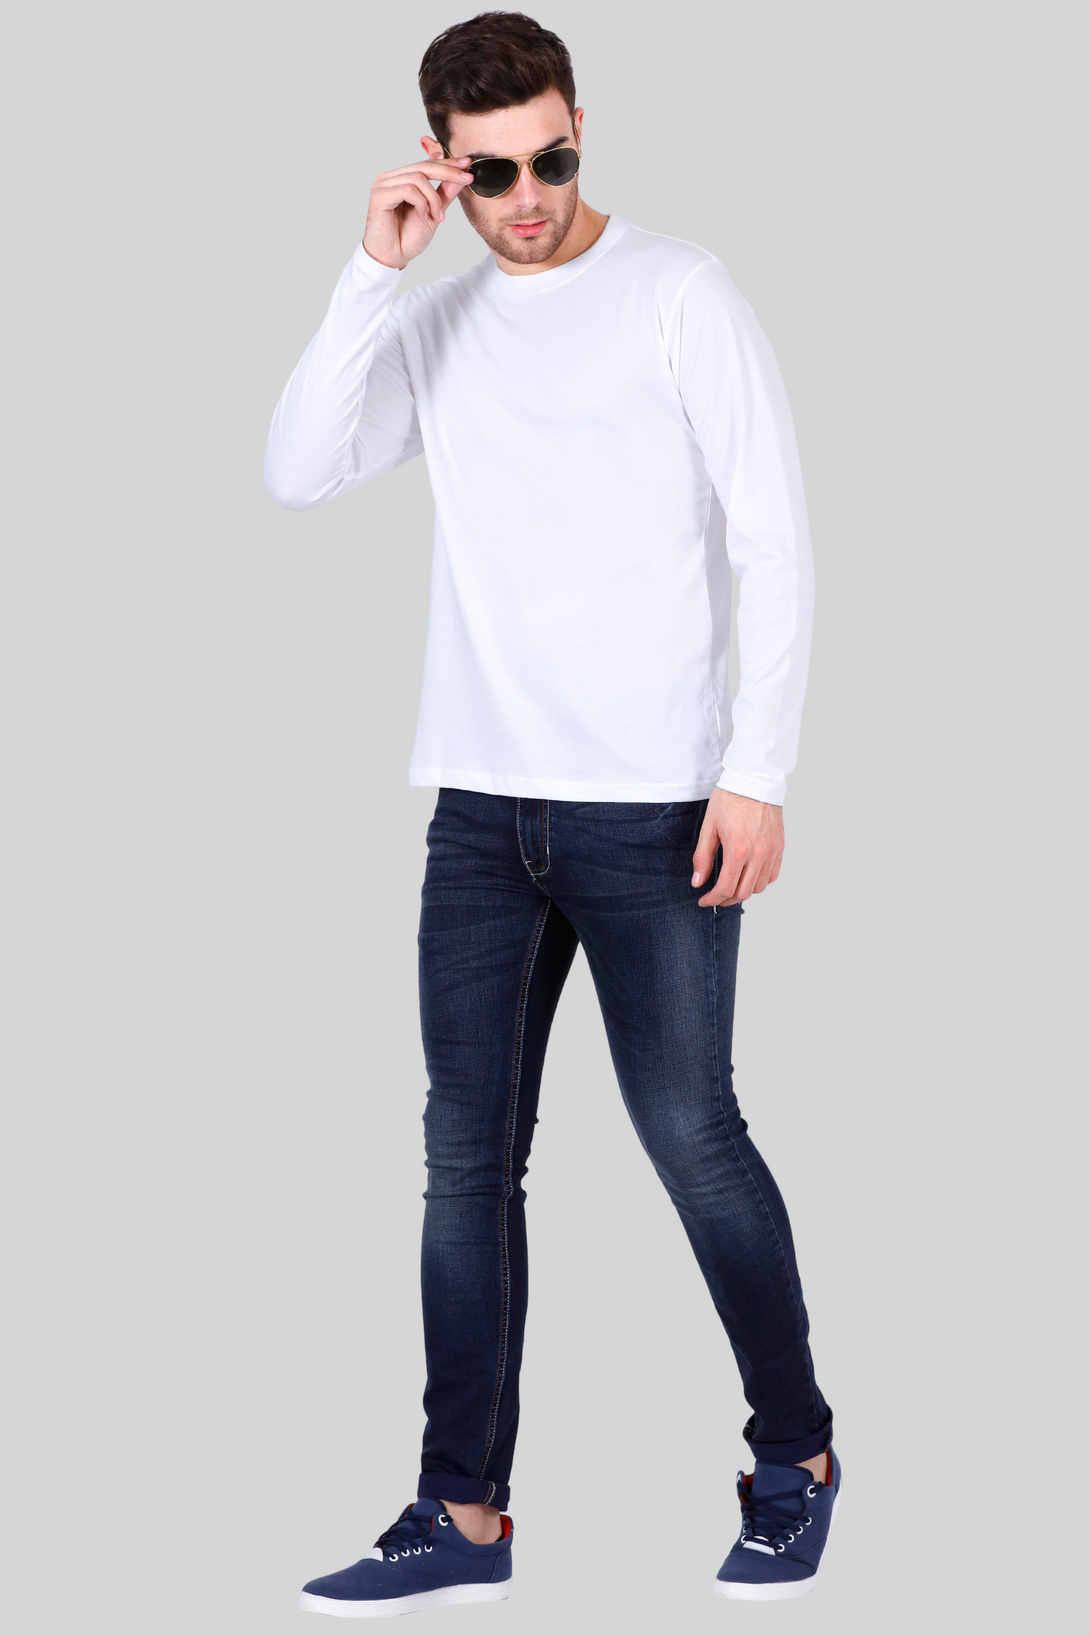 White Full Sleeve T-Shirt For Men - WowWaves - 7